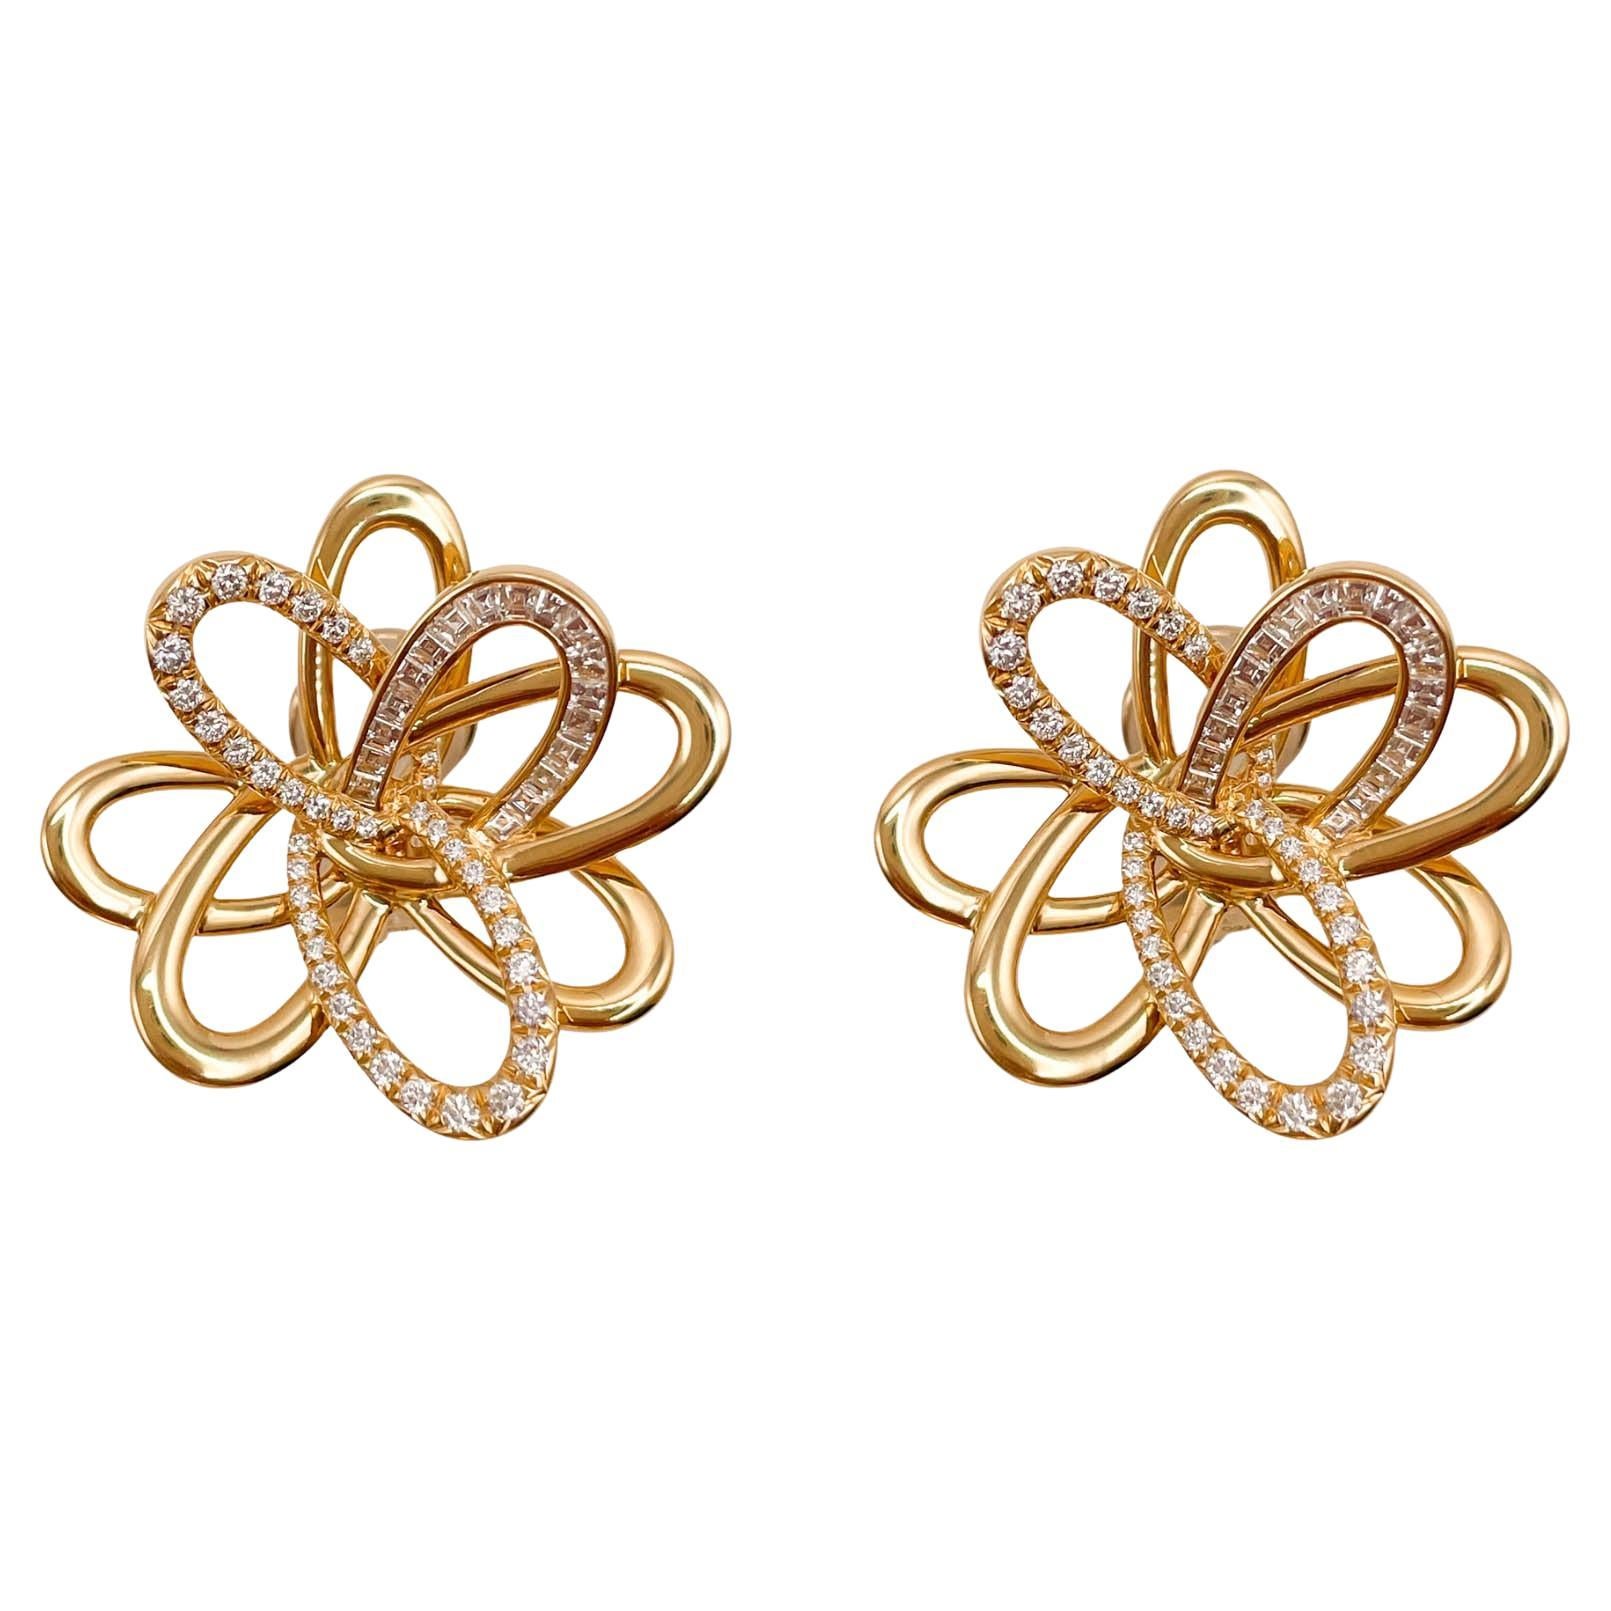 Sofragem 18k Yellow Gold Diamond Flower Earrings For Sale